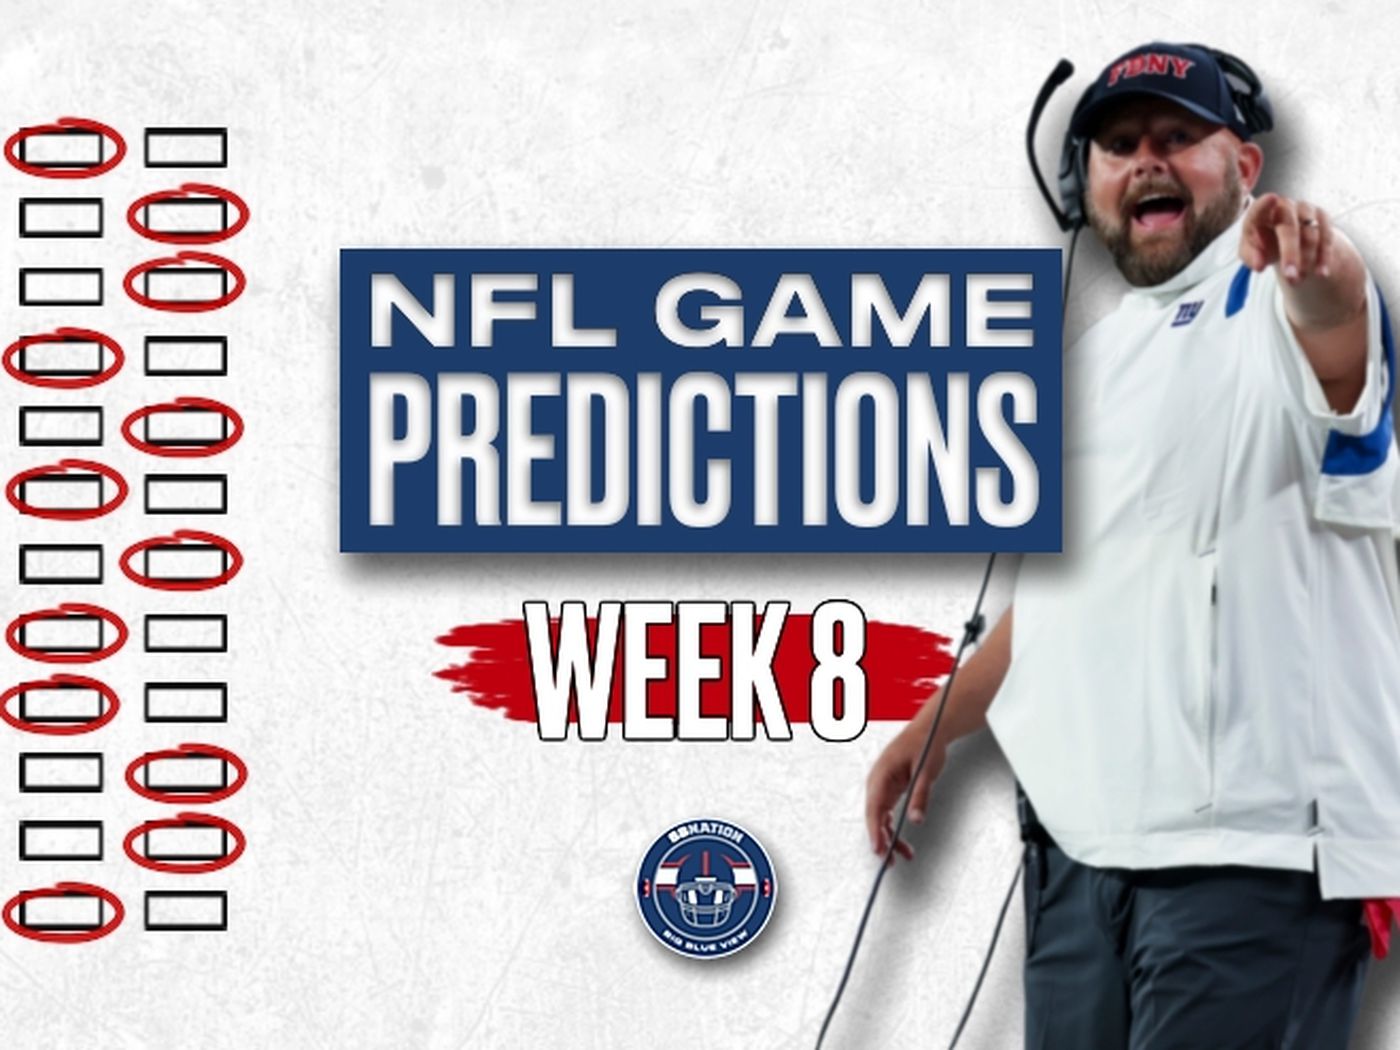 week 8 nfl schedule predictions